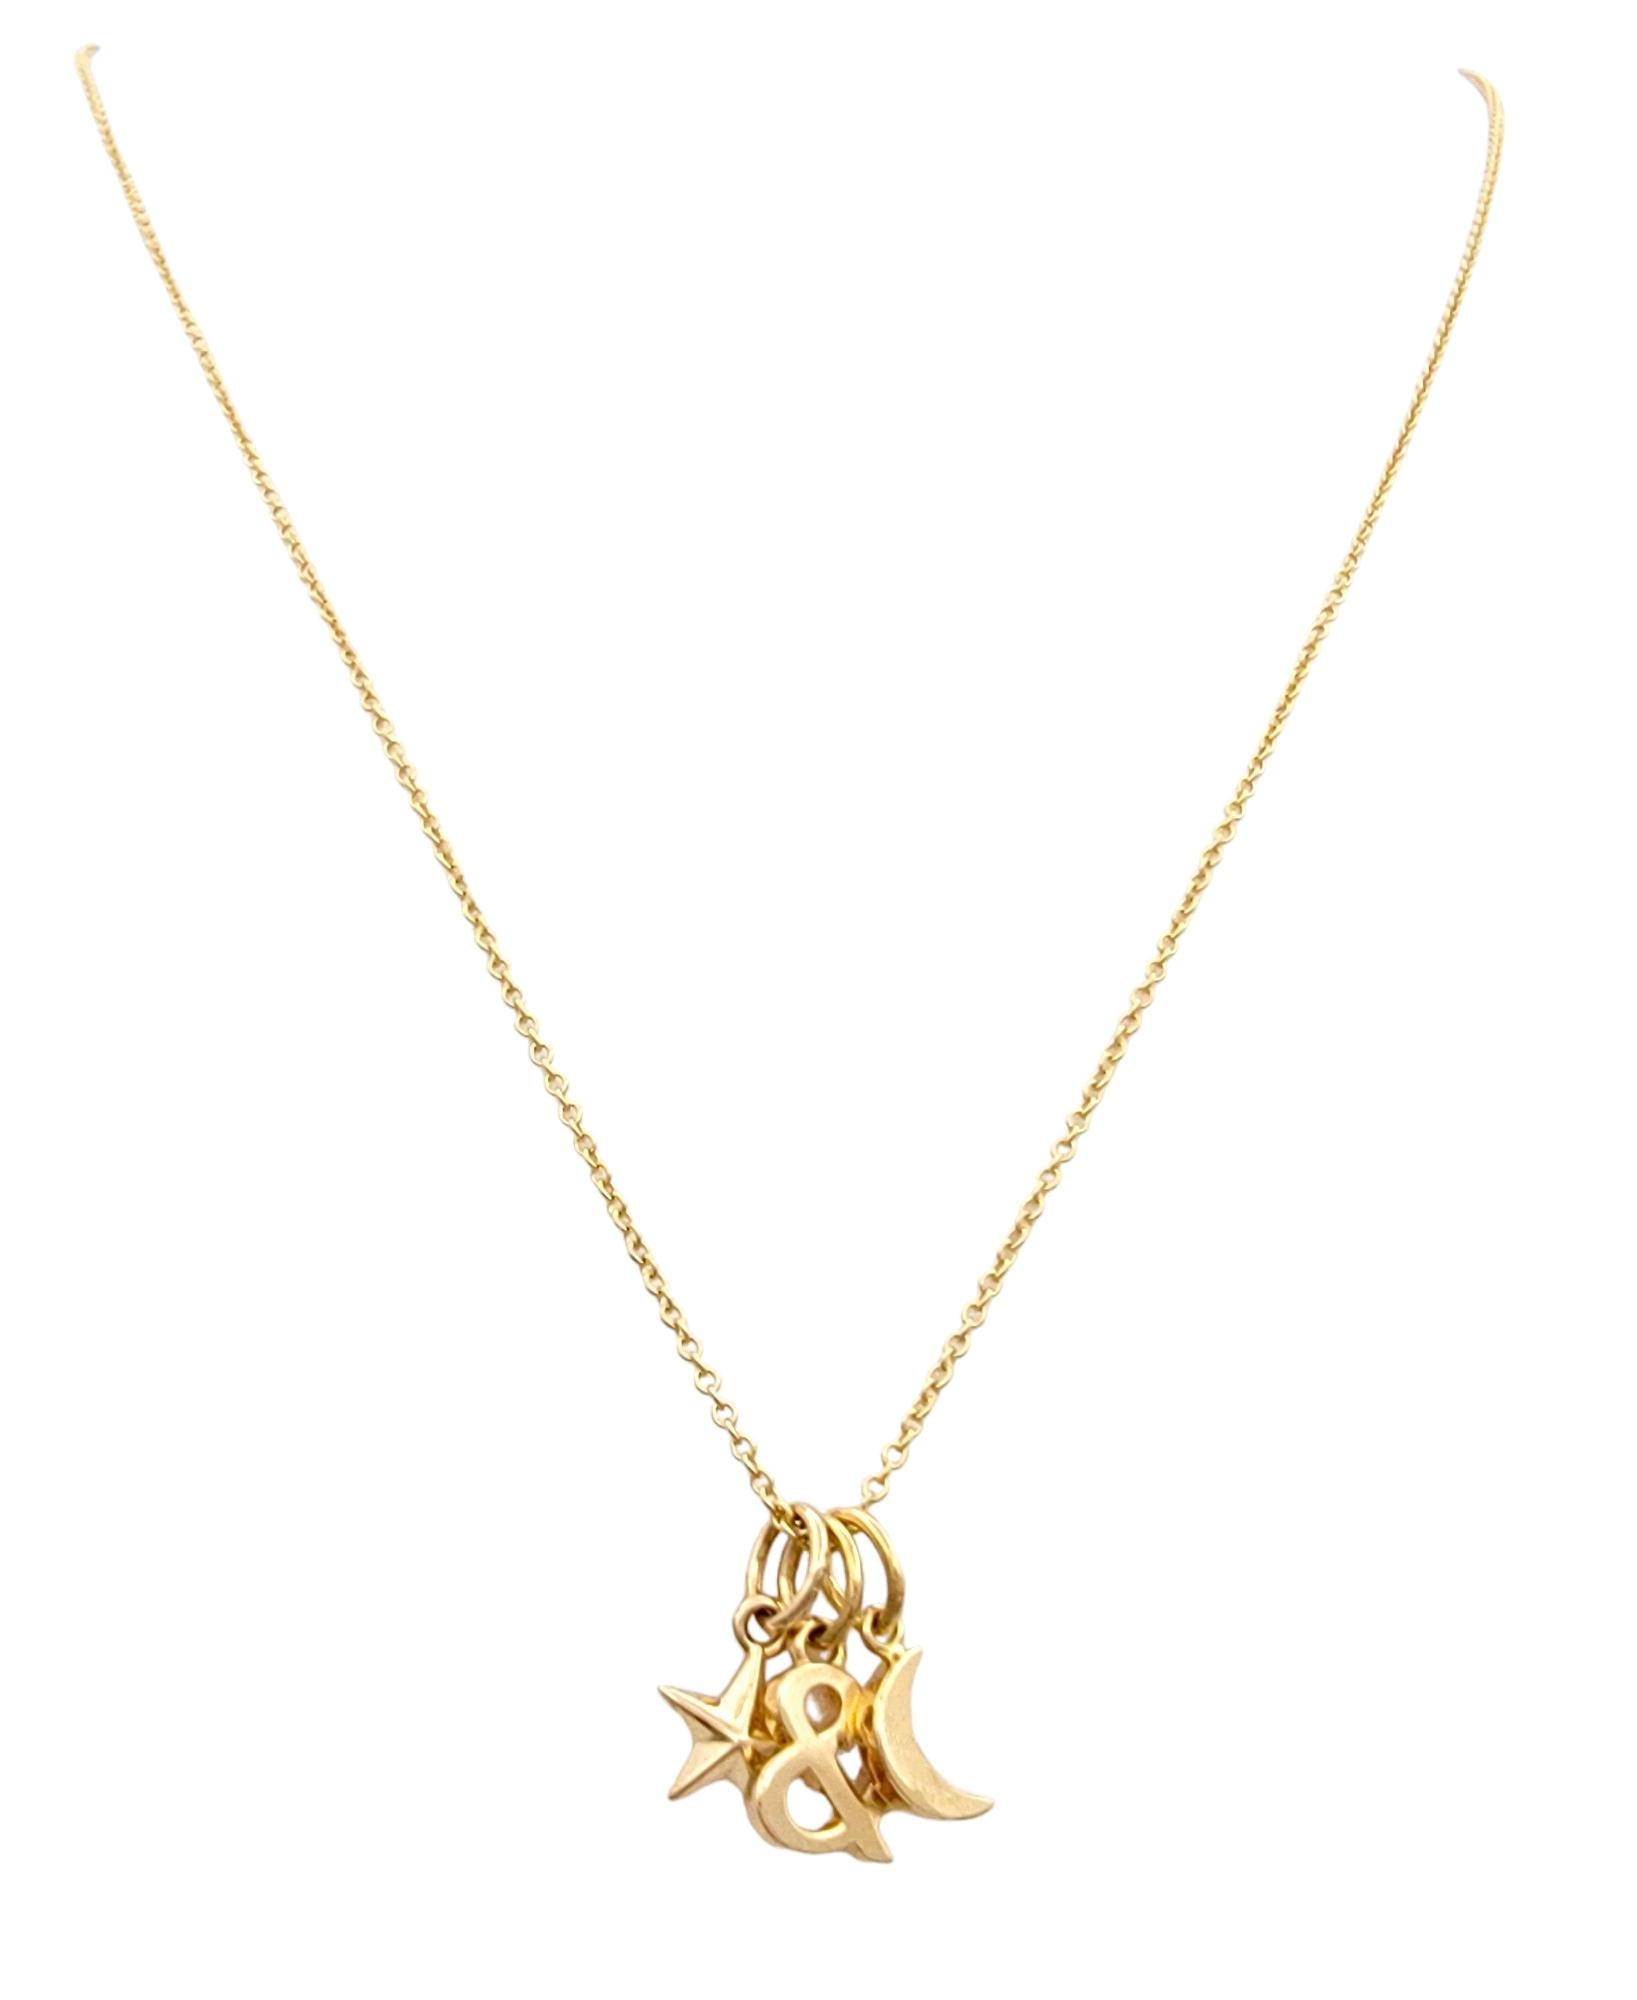 Ce magnifique collier à breloques Tiffany & Co. en or rose 18 carats est une pièce délicate et fantaisiste qui capture la magie du ciel nocturne. Suspendu à une délicate chaîne en câble, le collier comporte trois charmants pendentifs : une étoile,